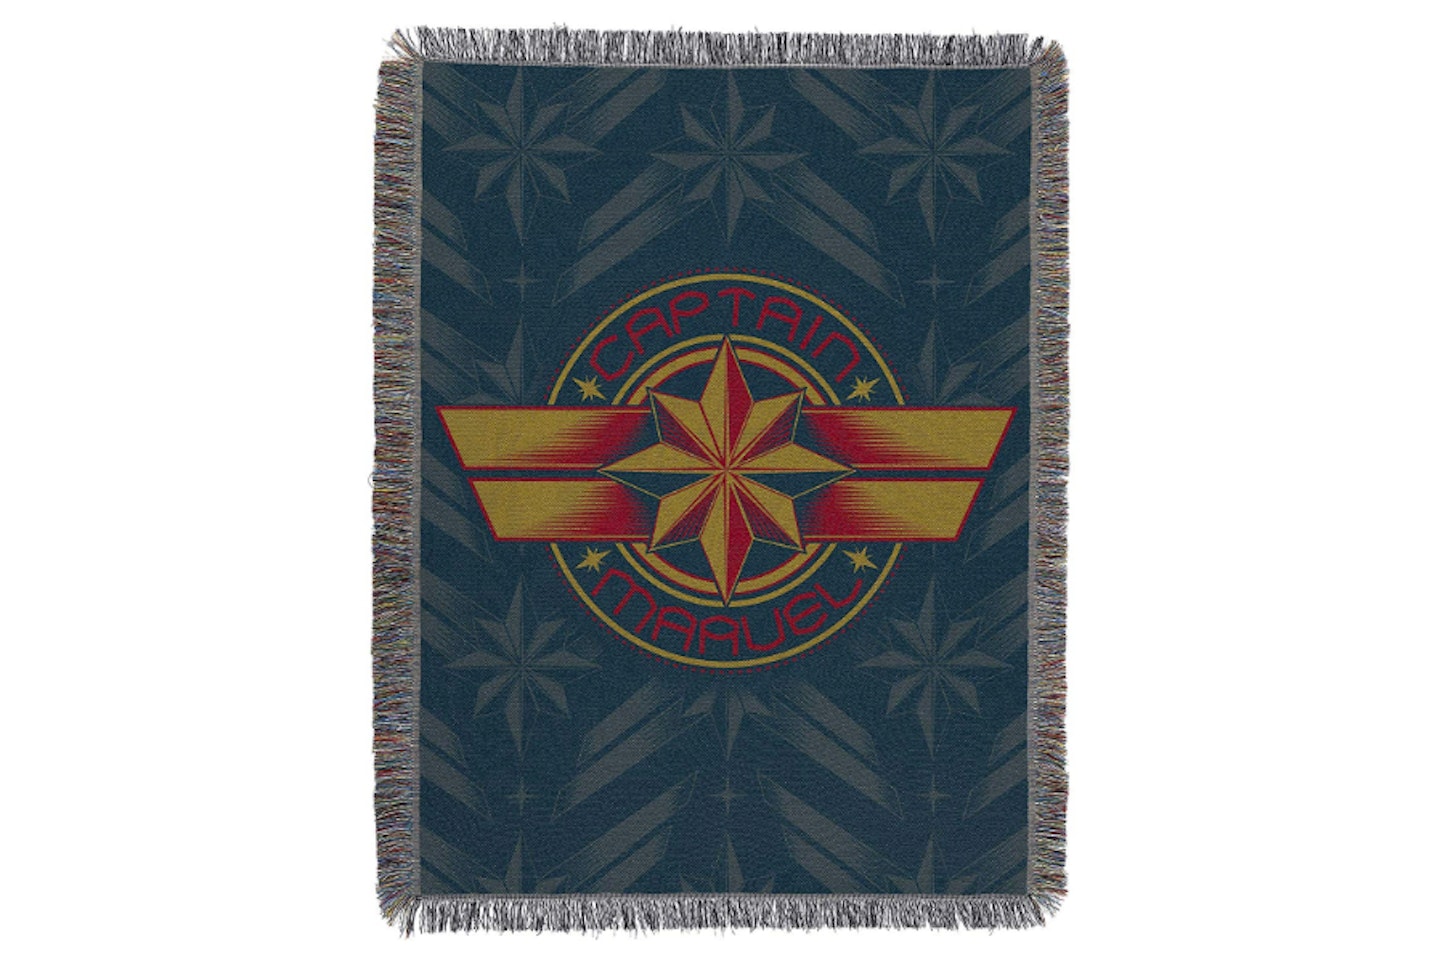 Captain Marvel Blue Badge Woven Tapestry Throw Blanket 48" x 60", £18.79